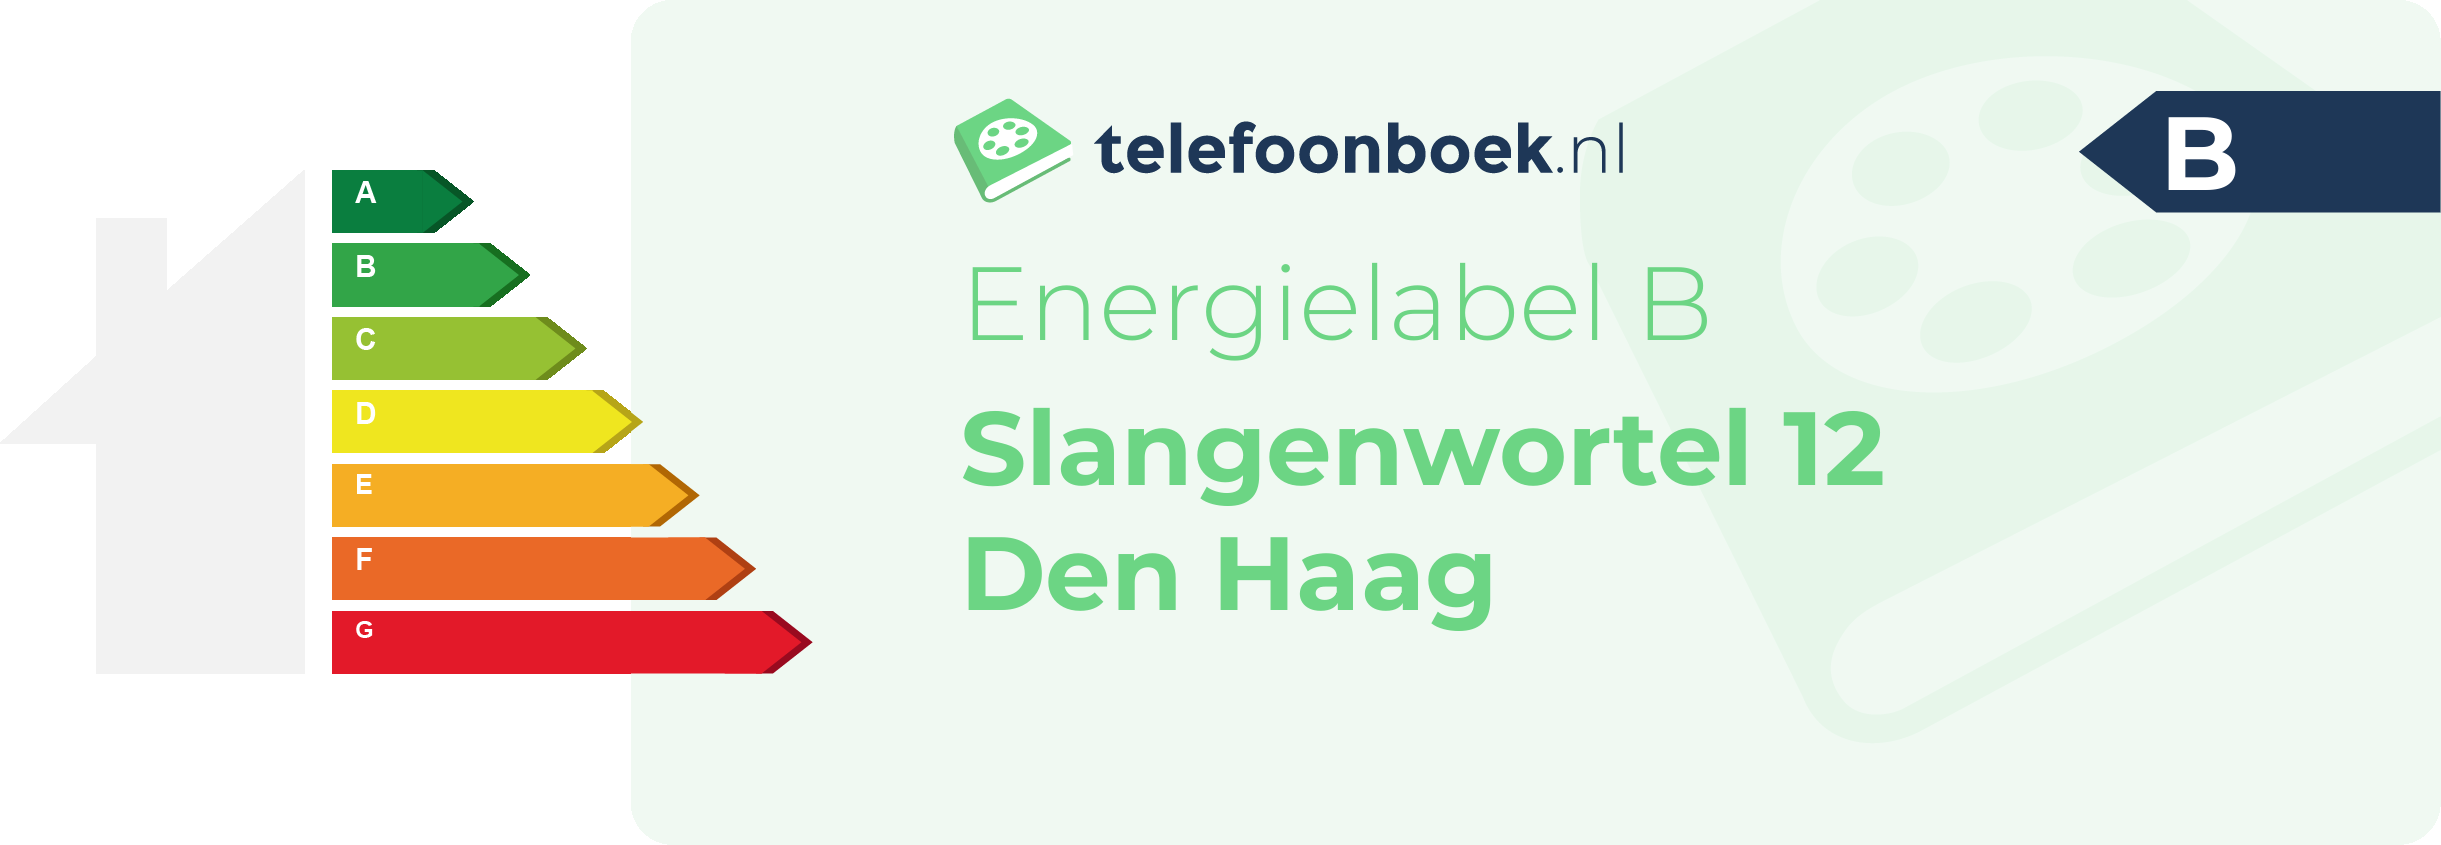 Energielabel Slangenwortel 12 Den Haag